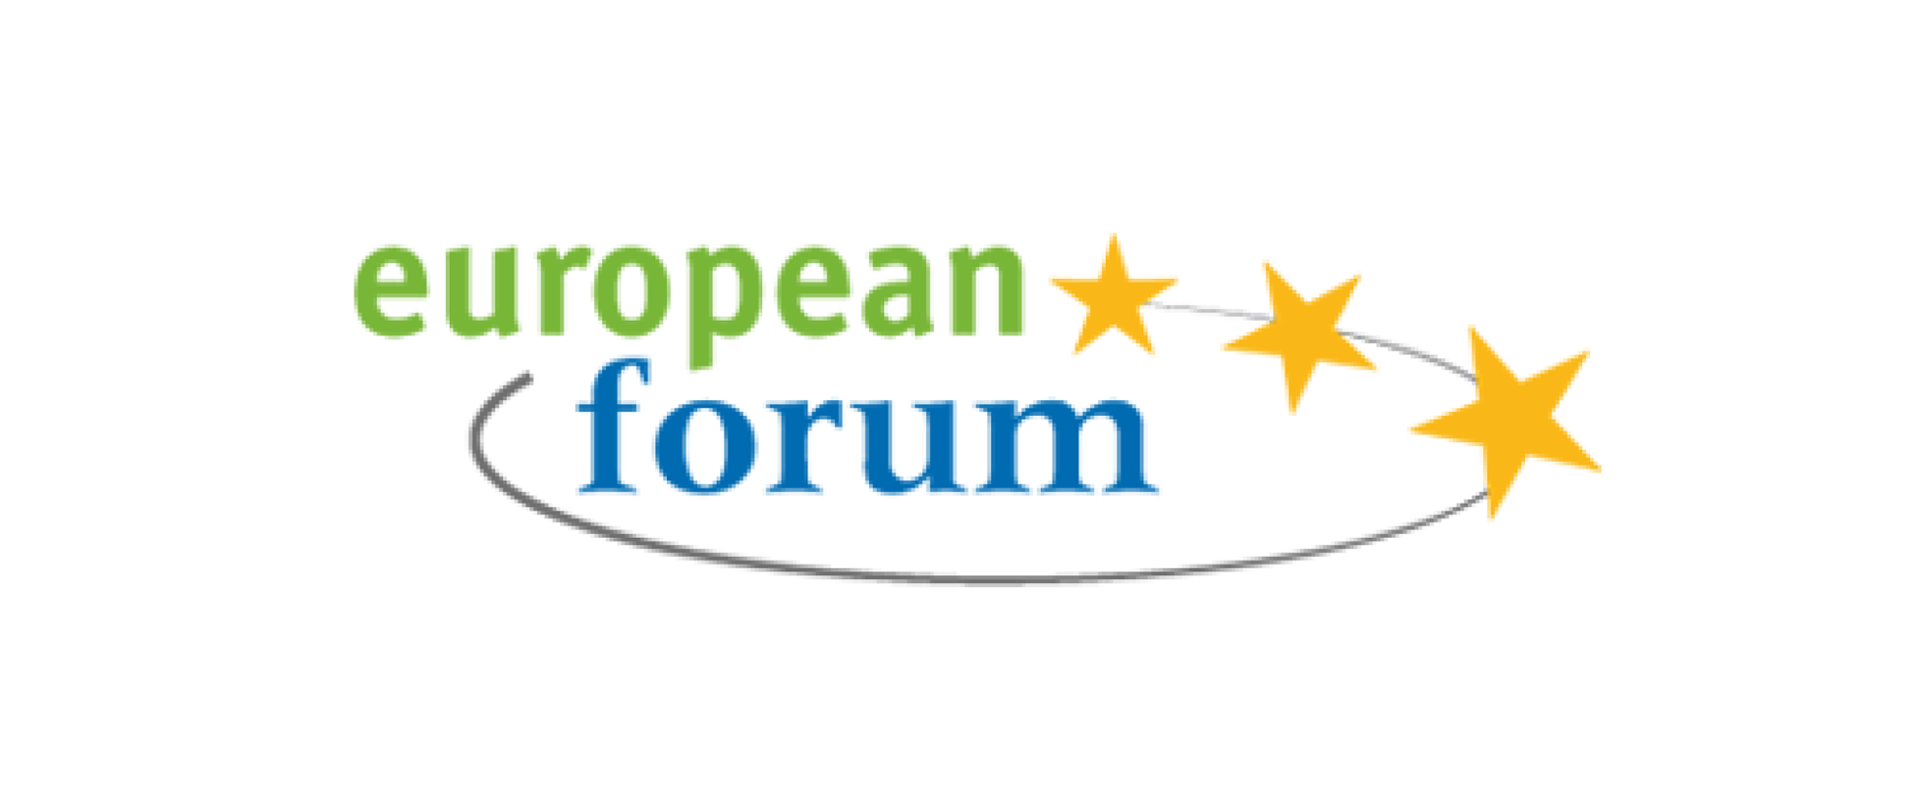 Napis european forum zakreślone elipsą z trzema gwiazdkami po prawej